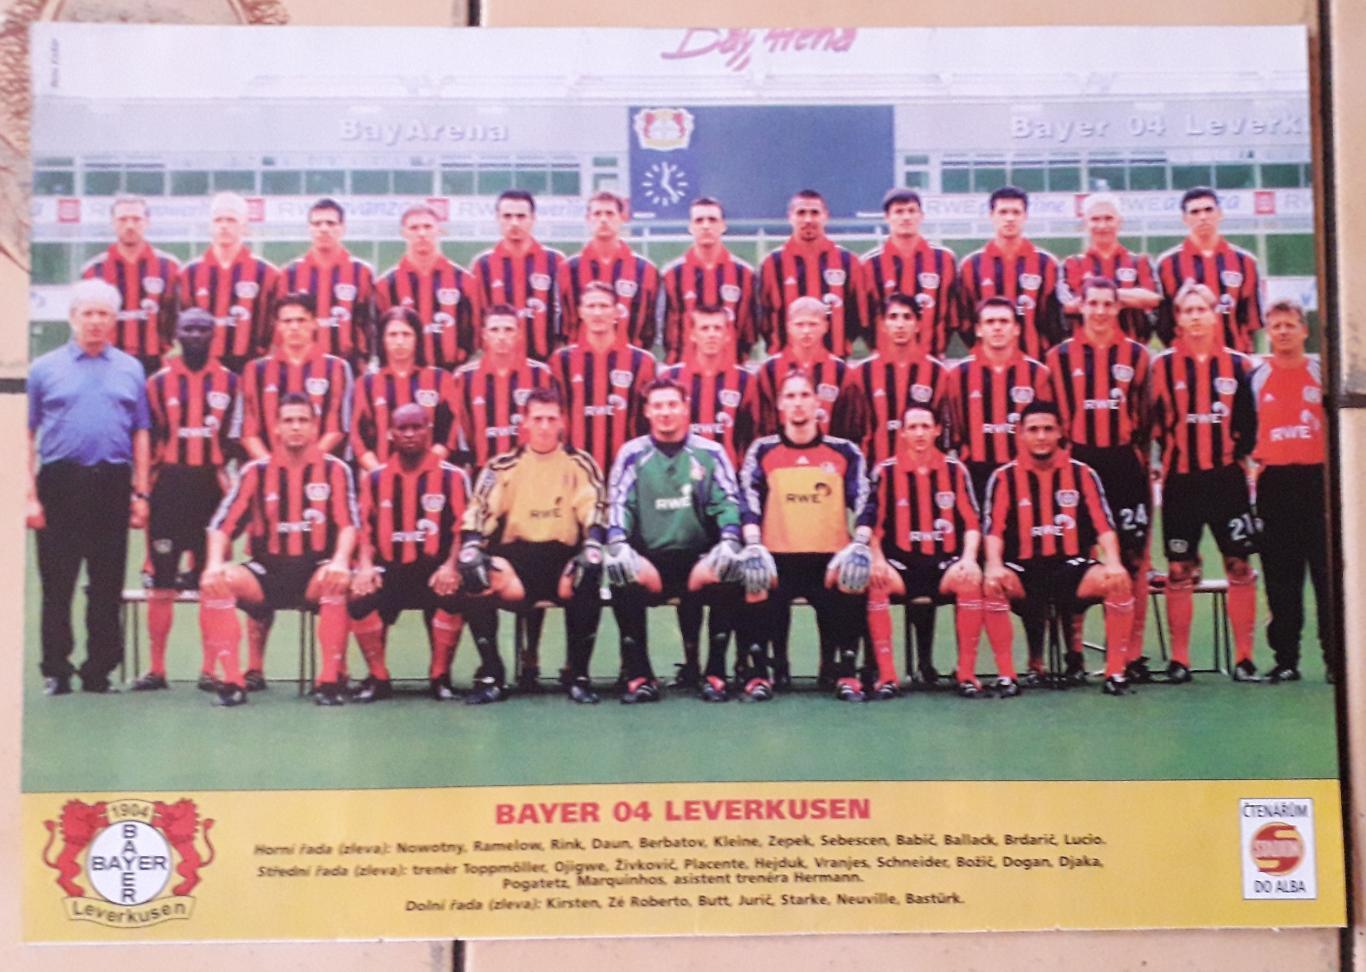 Плакат формата А4 из журнала Stadion Bayer Leverkusen.